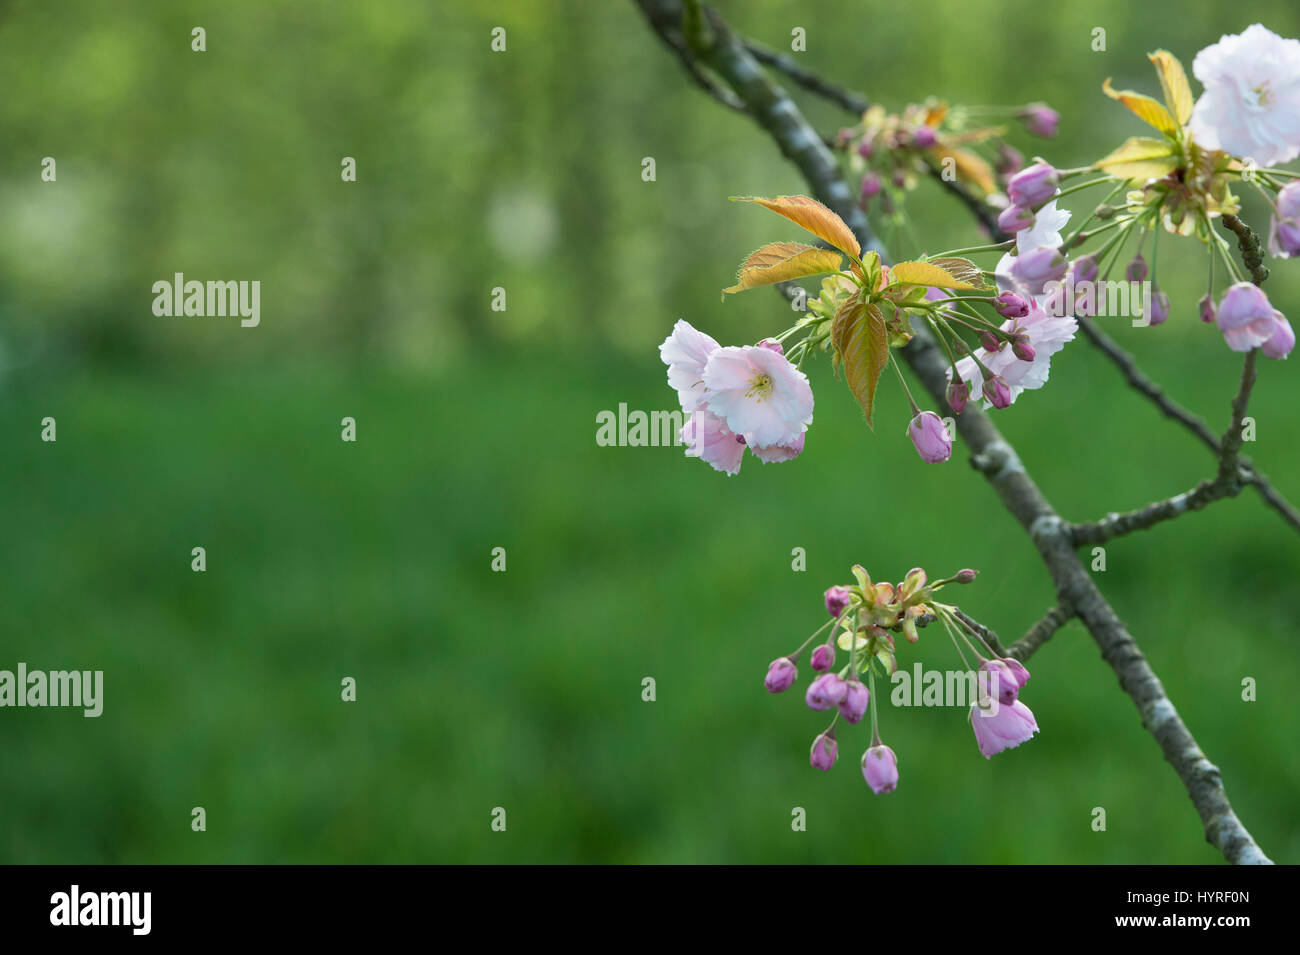 Prunus ‘Ichiyo’. Japanese Cherry tree blossom in spring. UK Stock Photo